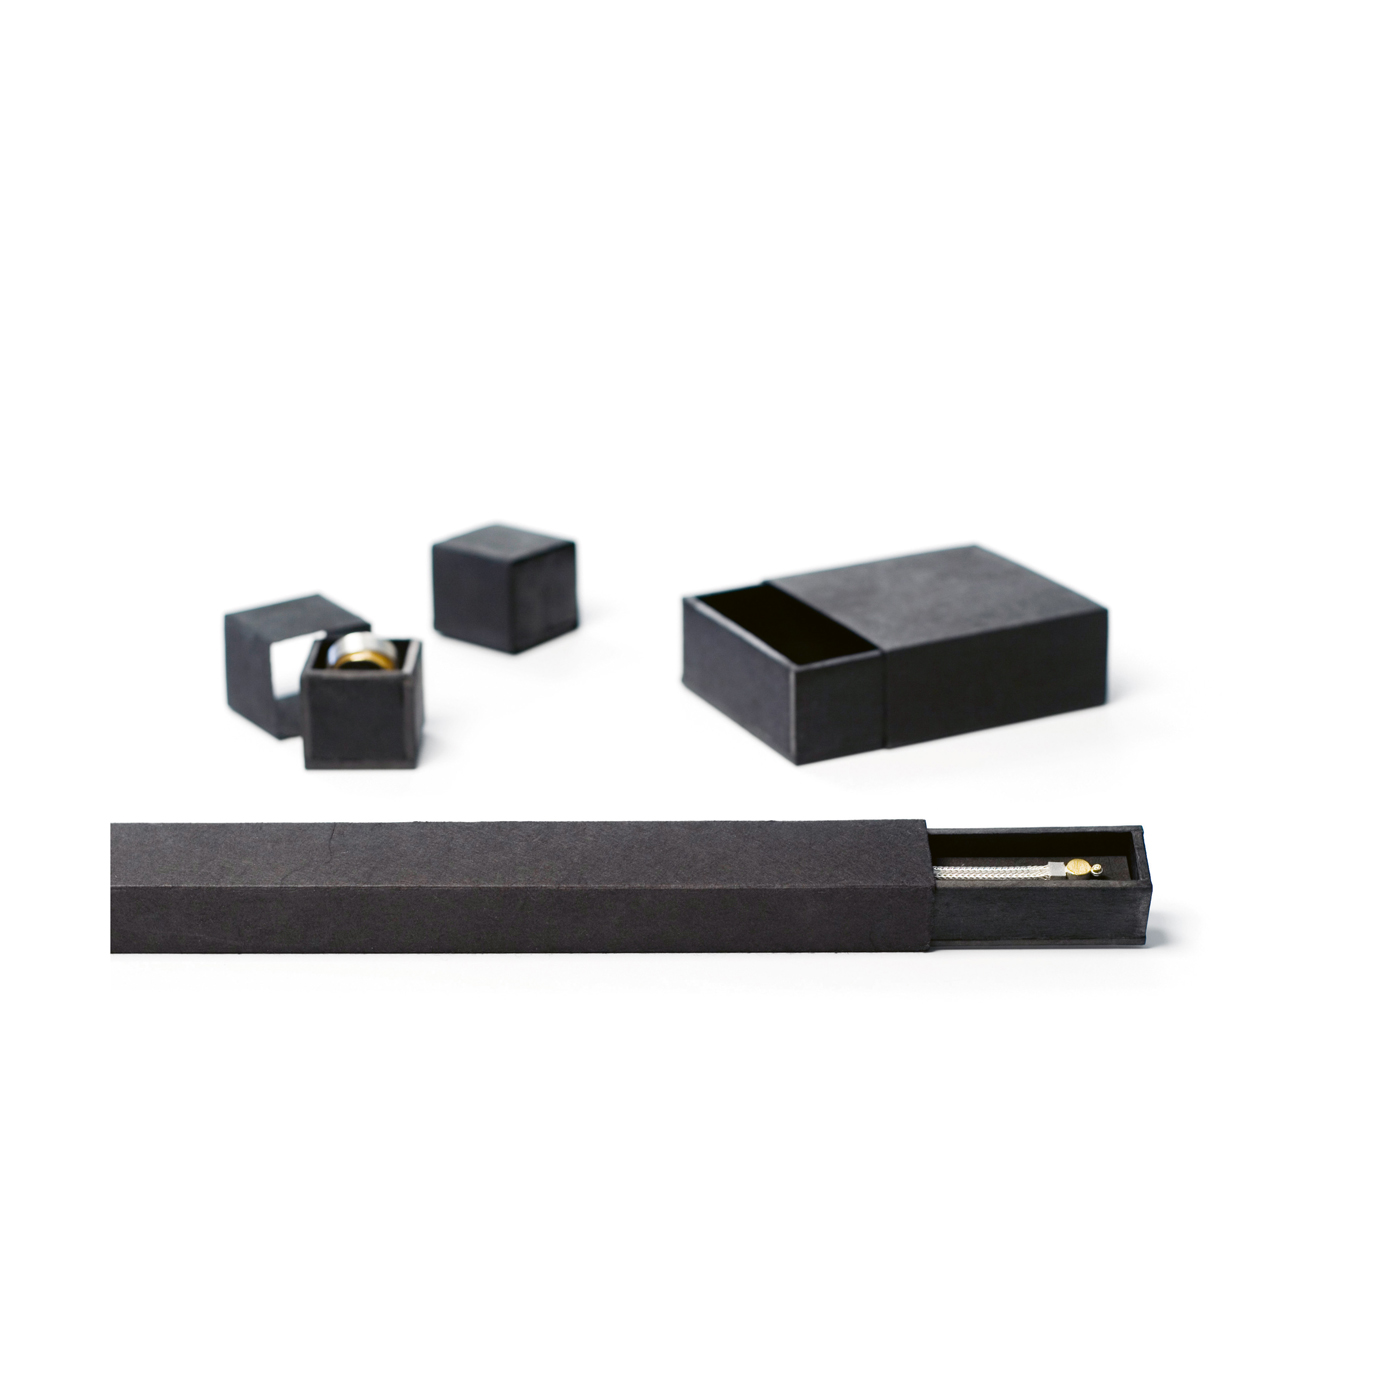 PICA-Design Schmucketui "Quadrabox", schwarz, 65 x 45 x 33 mm - 1 Stück